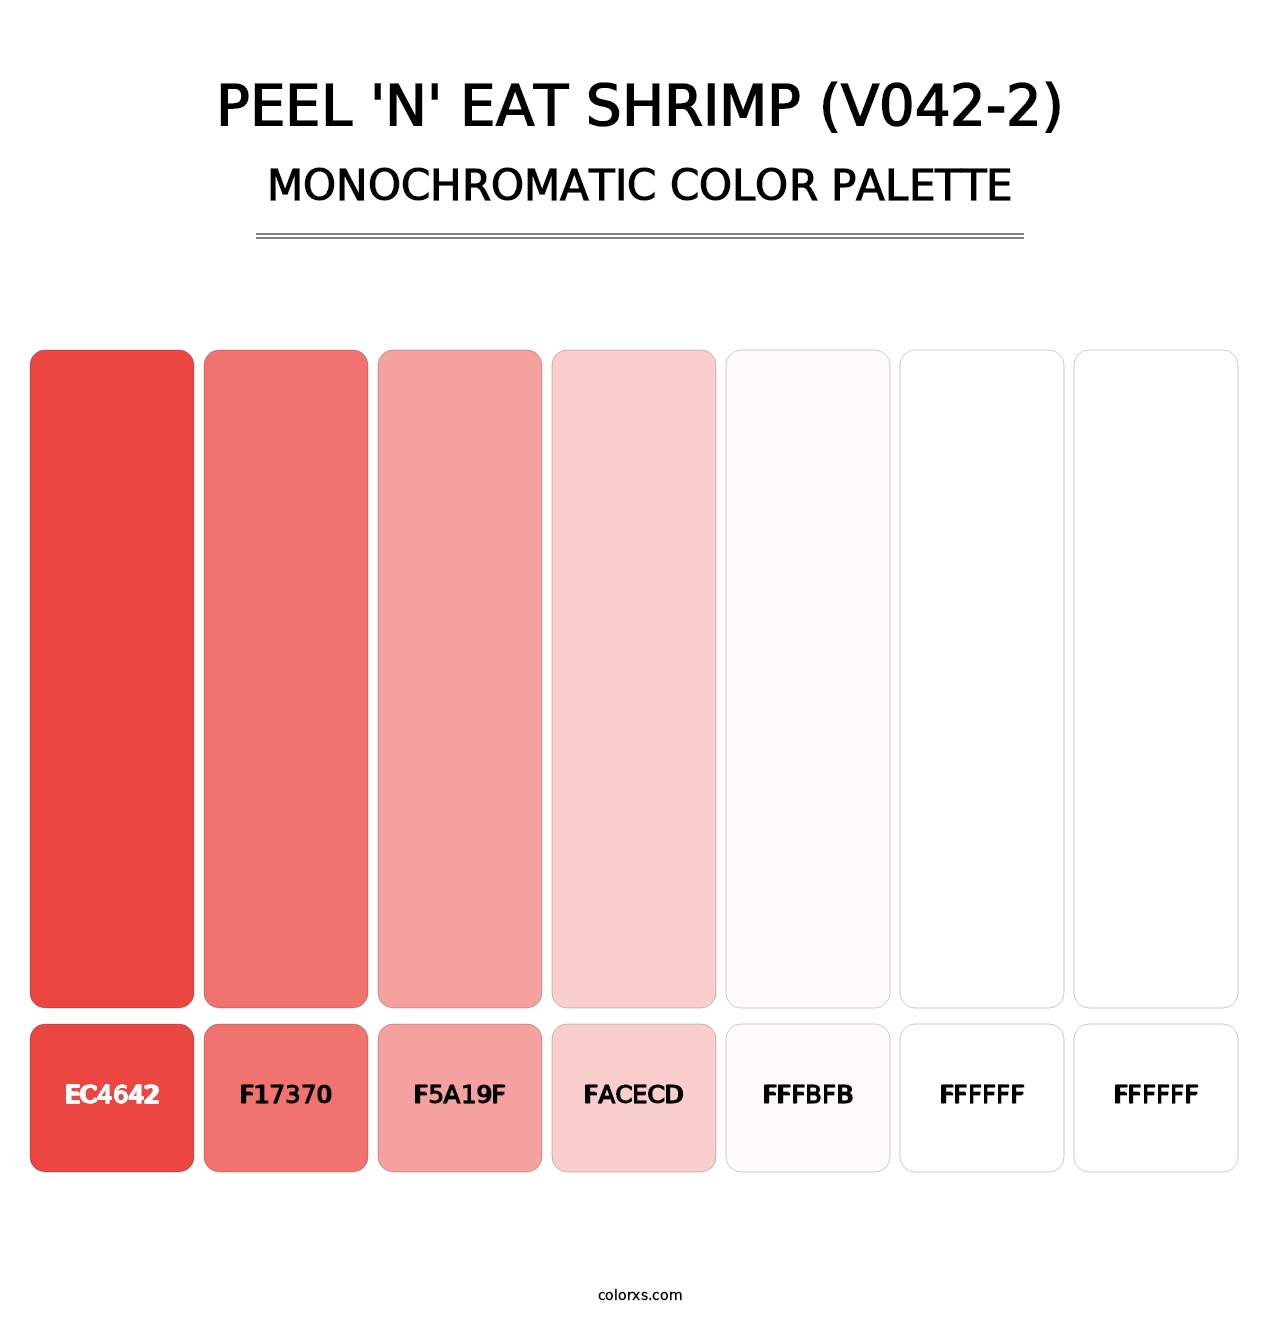 Peel 'n' Eat Shrimp (V042-2) - Monochromatic Color Palette